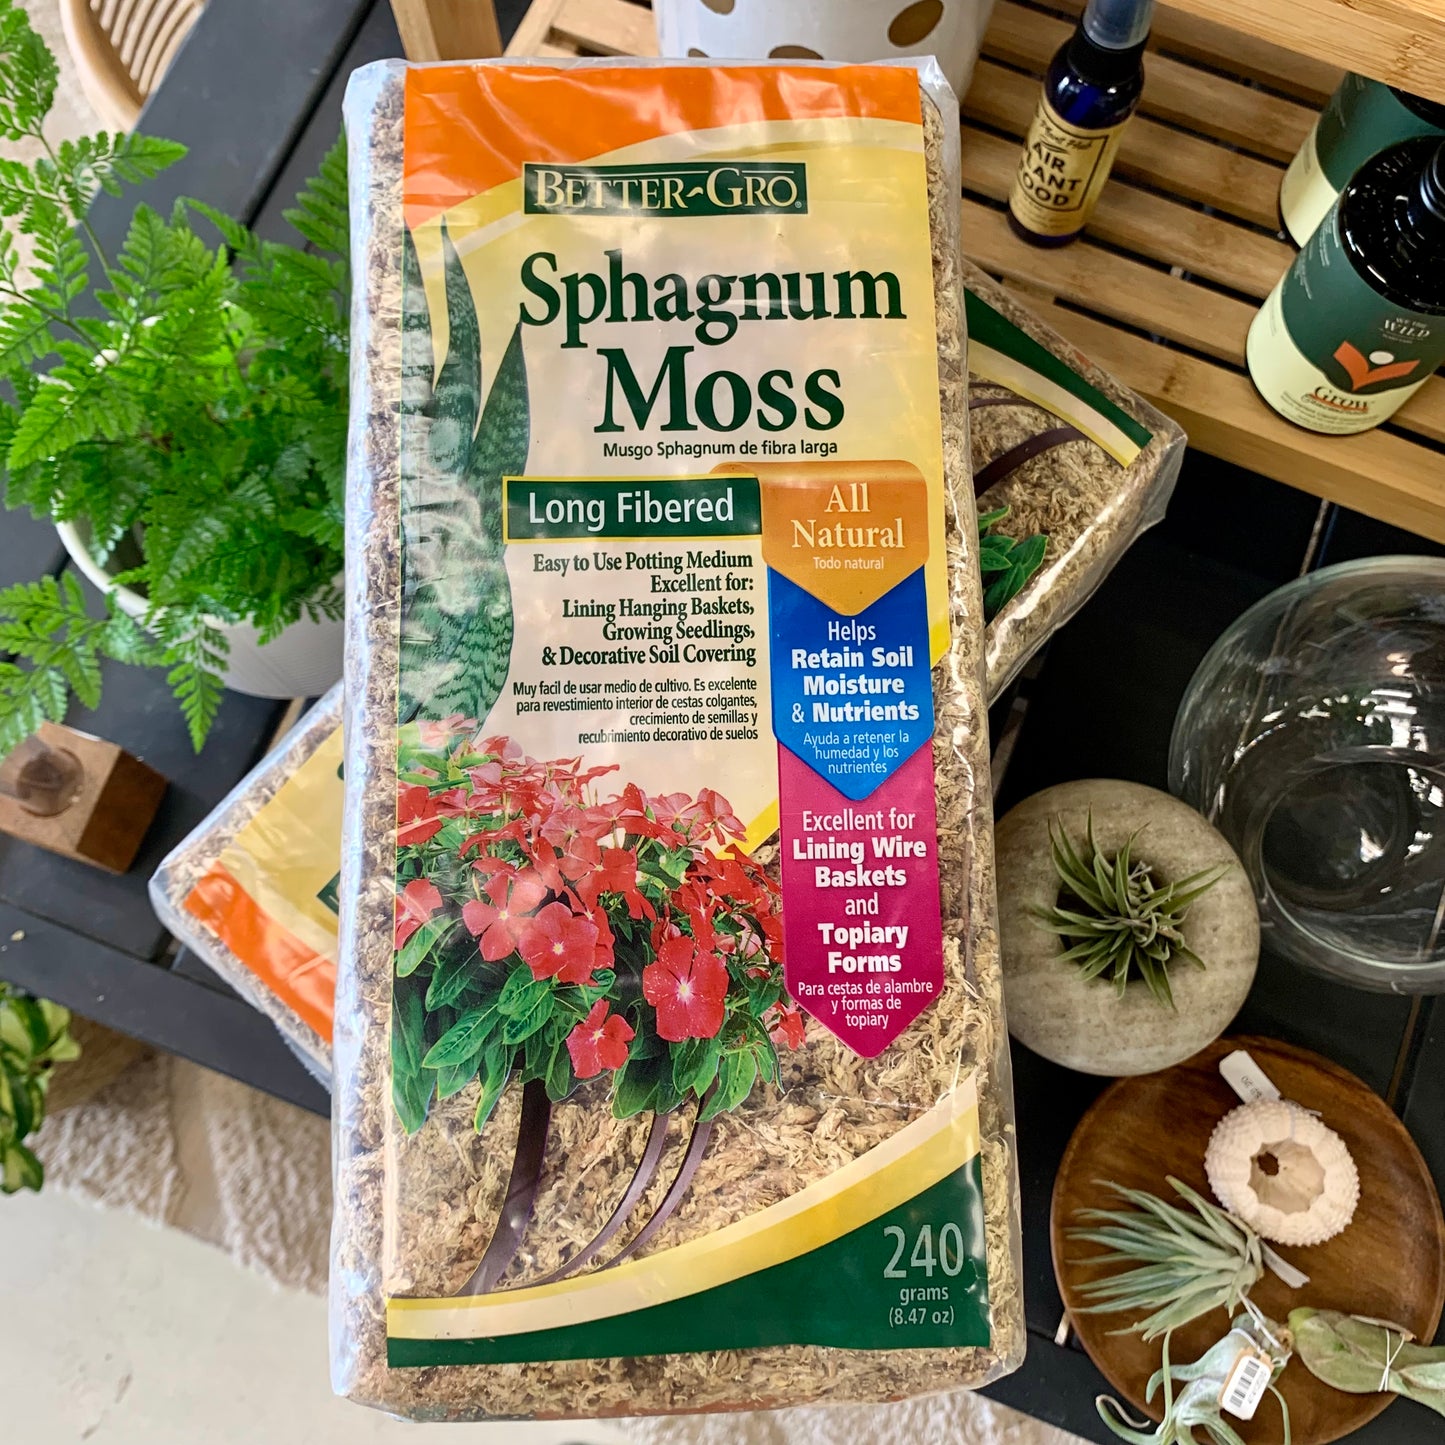 Better-Gro Sphagnum Moss